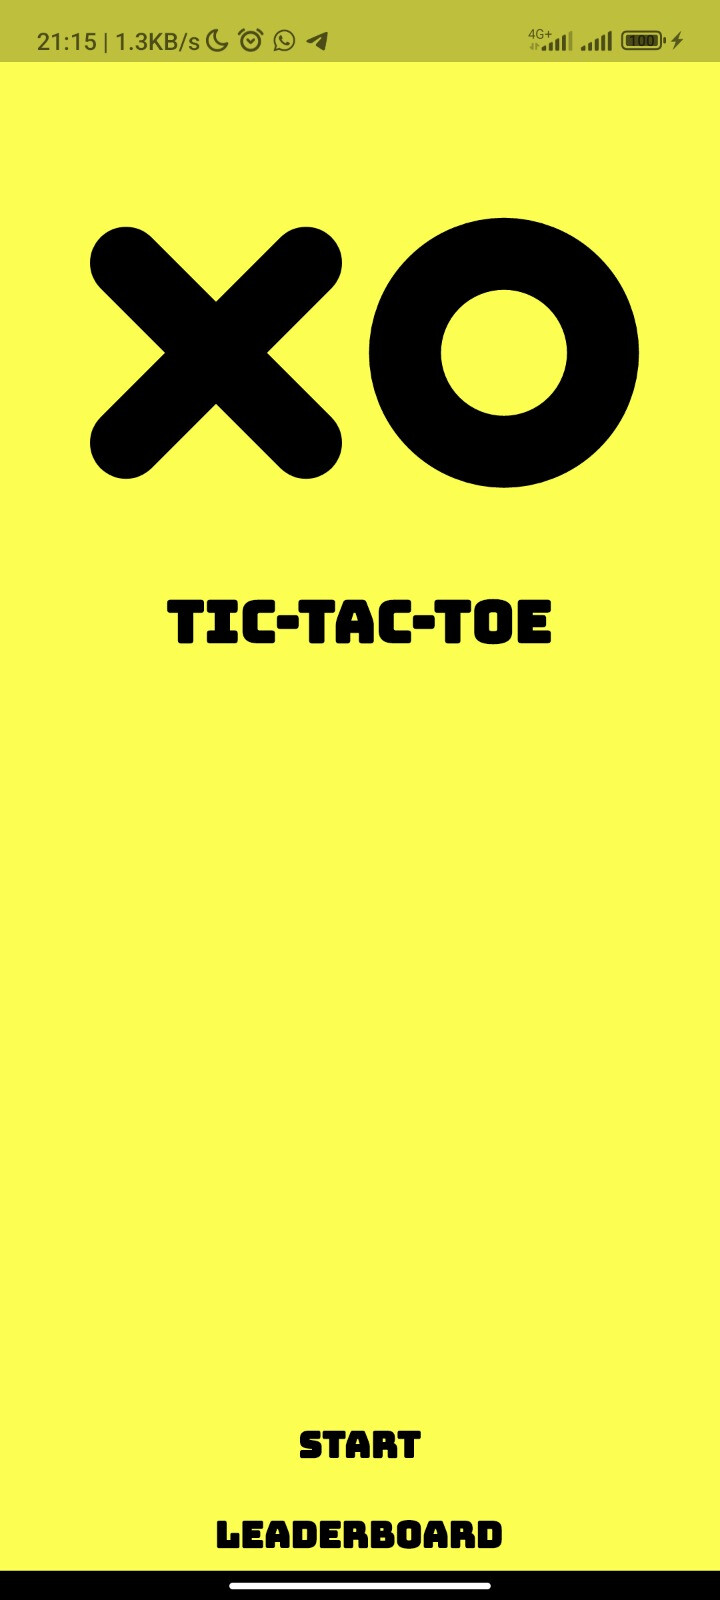 Criando um jogo da velha (Tic Tac Toe) com Flutter, by Kleber Andrade, Flutter — Comunidade BR